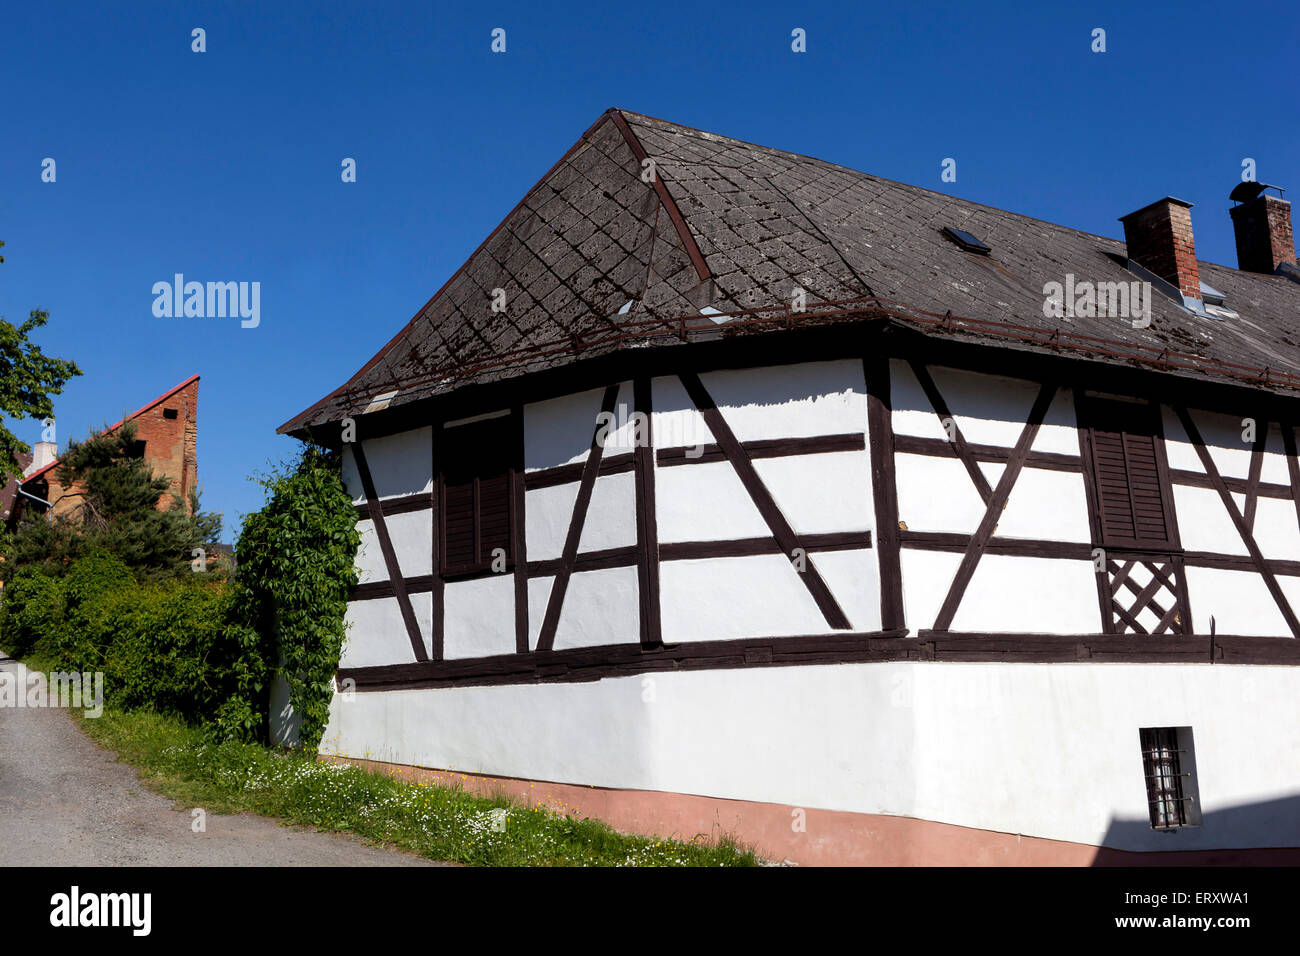 Rural République tchèque Utery est une petite ville pittoresque, Pilsen région Bohême de l'Ouest maison à colombages Banque D'Images